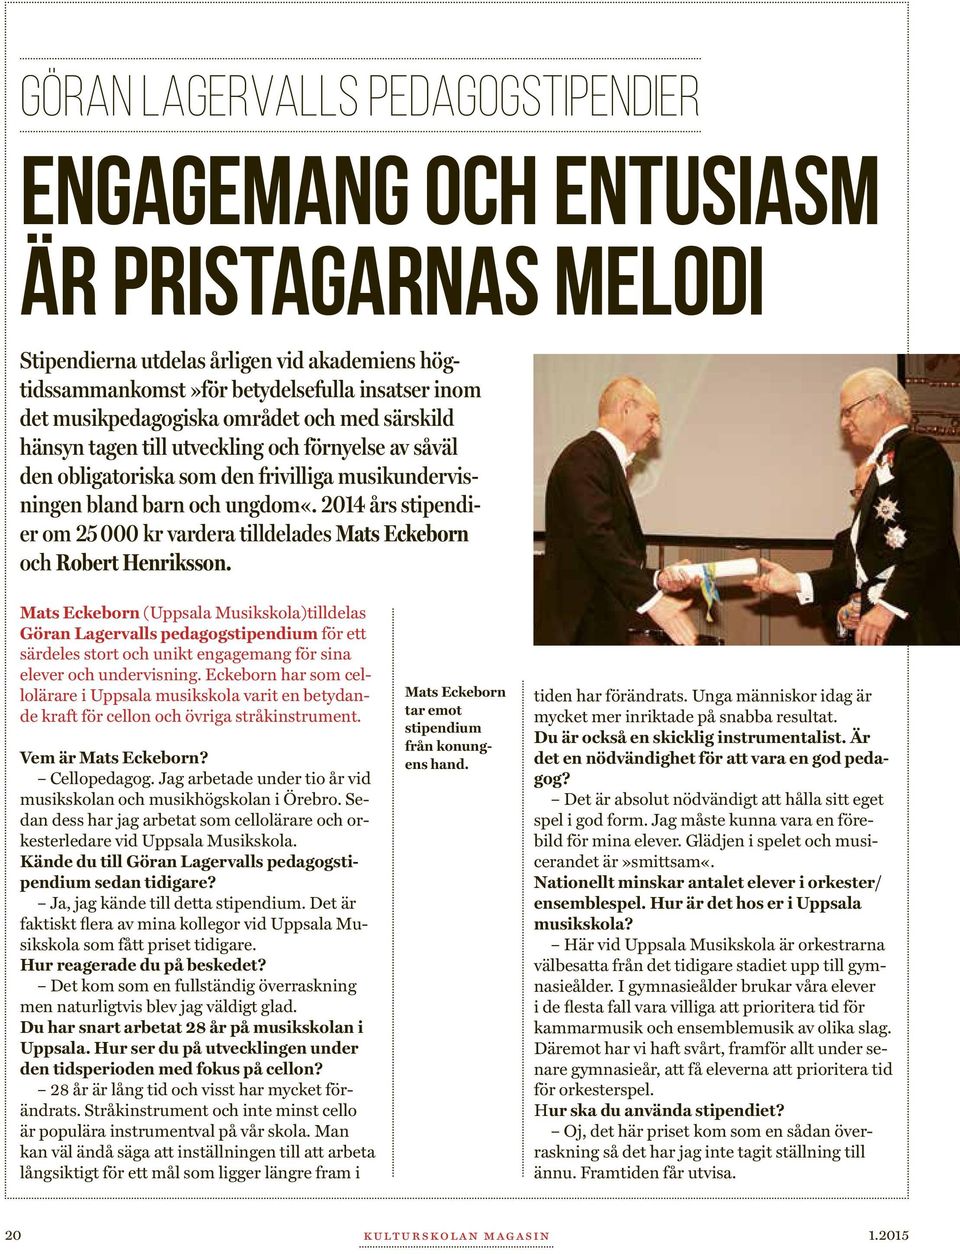 2014 års stipendier om 25 000 kr vardera tilldelades Mats Eckeborn och Robert Henriksson.